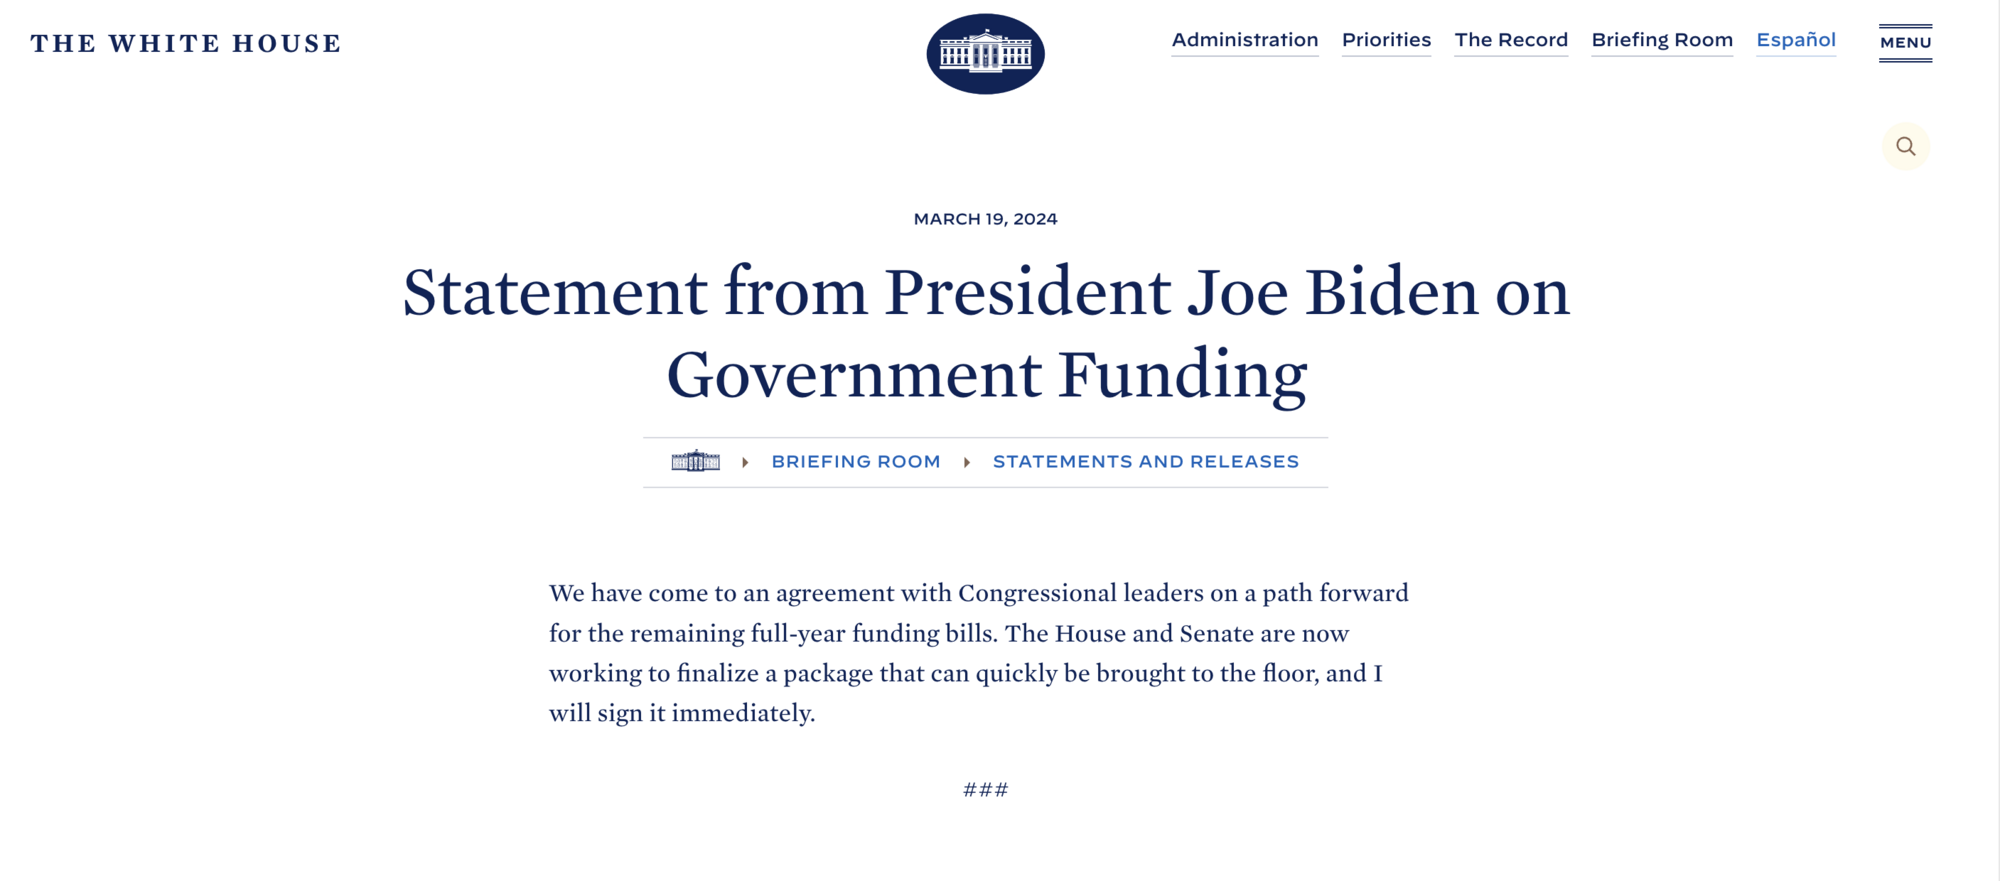 Белый дом и Конгресс пришли к согласию по бюджету США: Байден пообещал быстрое решение